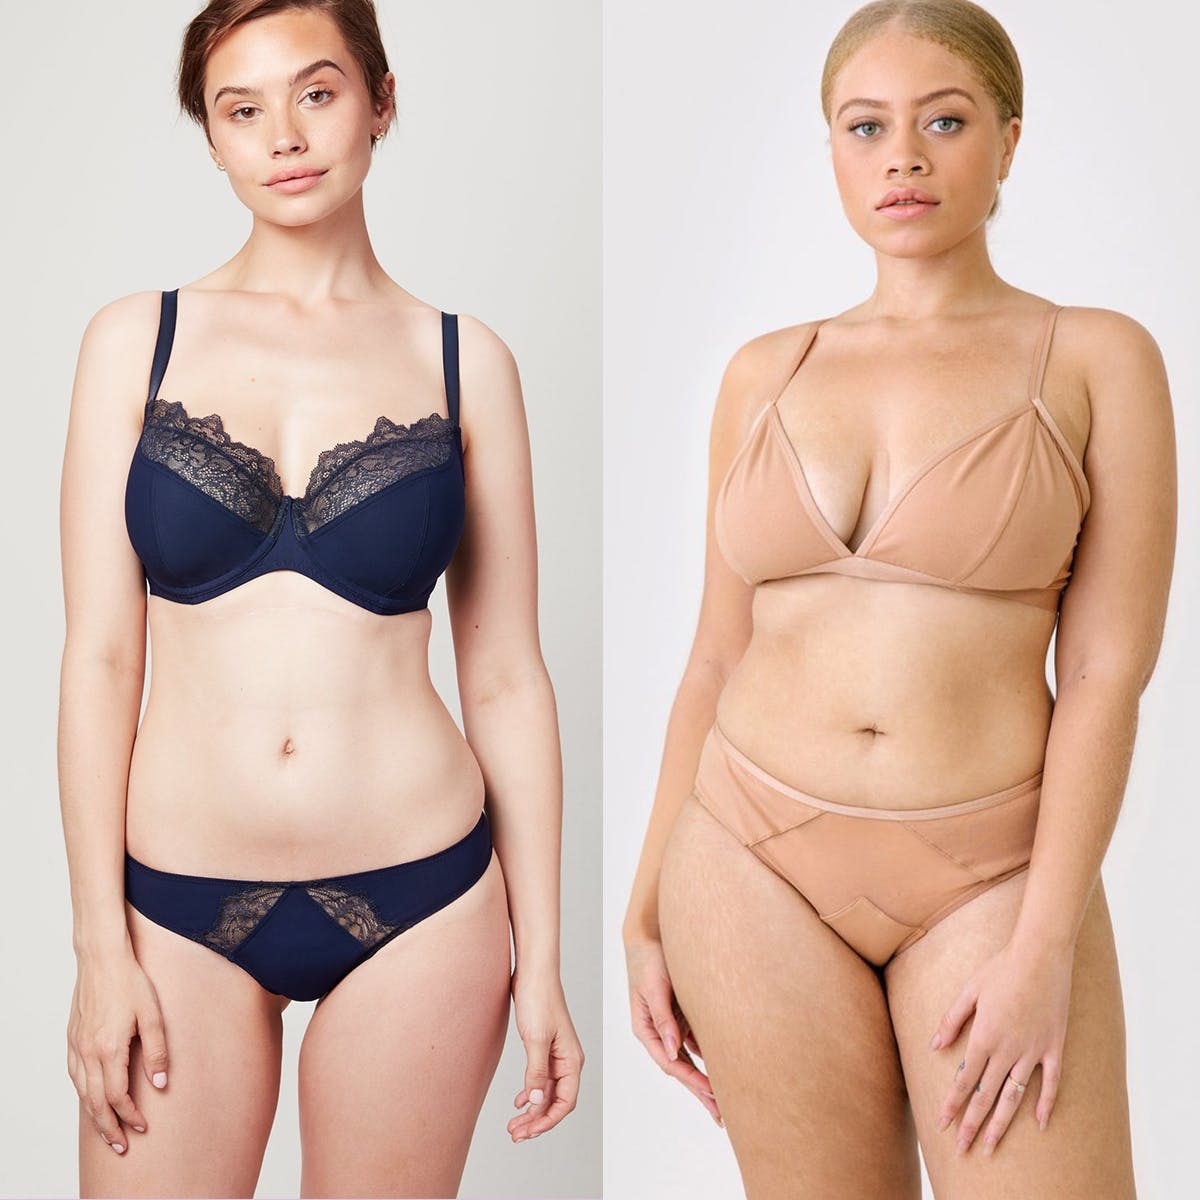 Buy True Meaning Sexy Women's Plus Size Lace Underwear Thin Bra